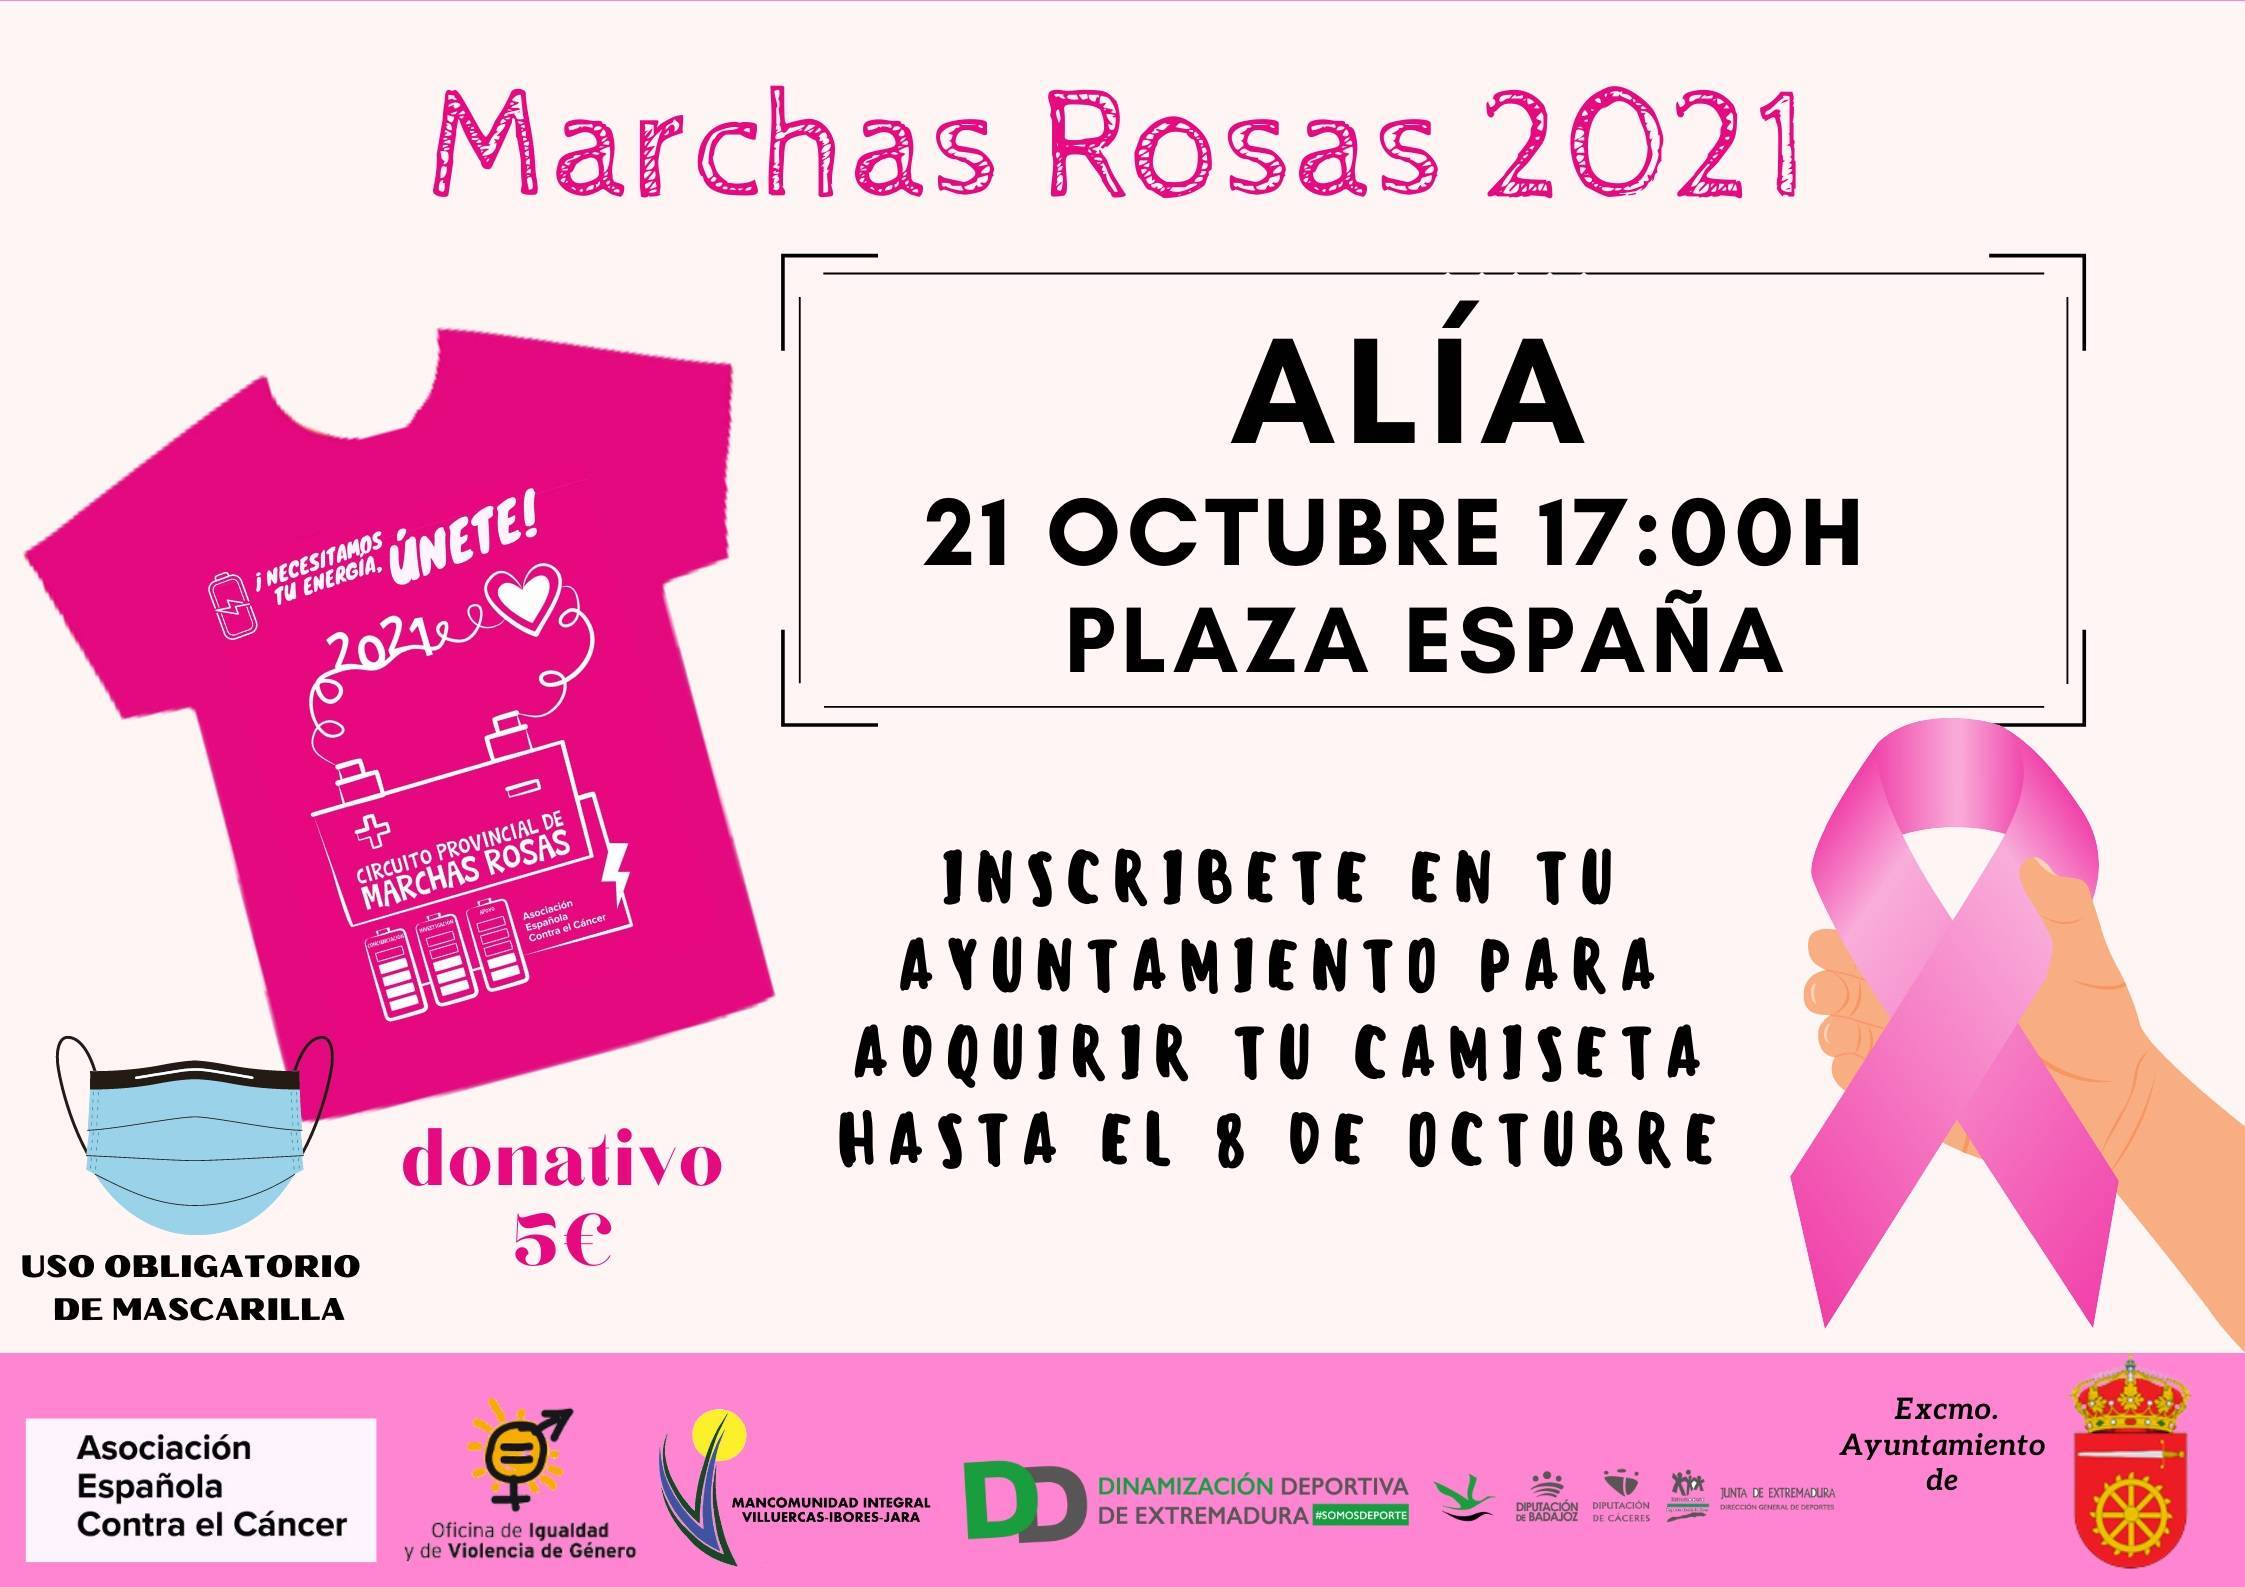 Marchas rosas (2021) - Alía (Cáceres)